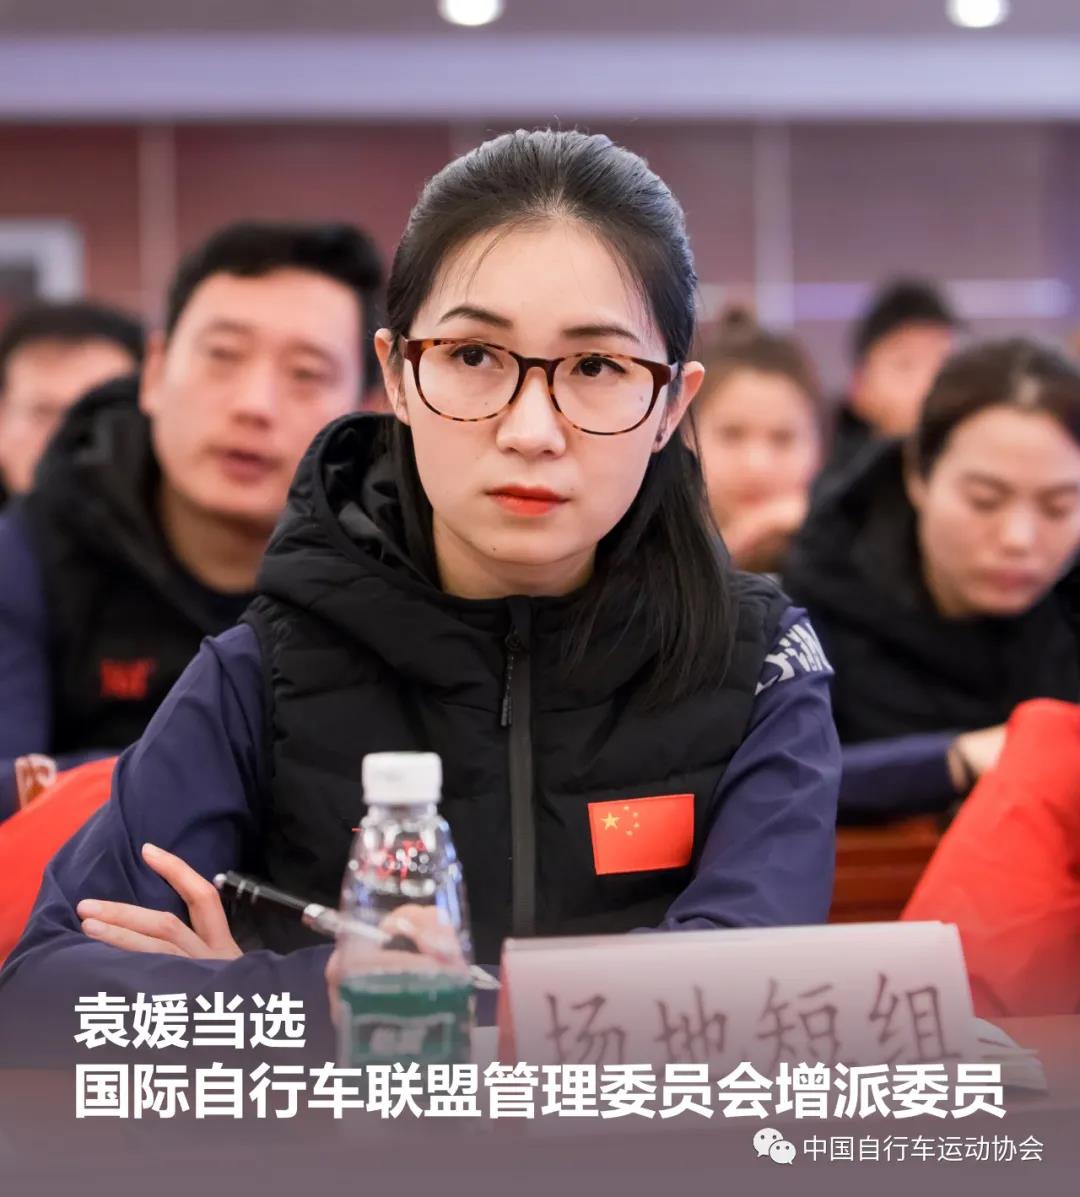 袁媛成功当选国际自行车联盟管理委员会增派委员